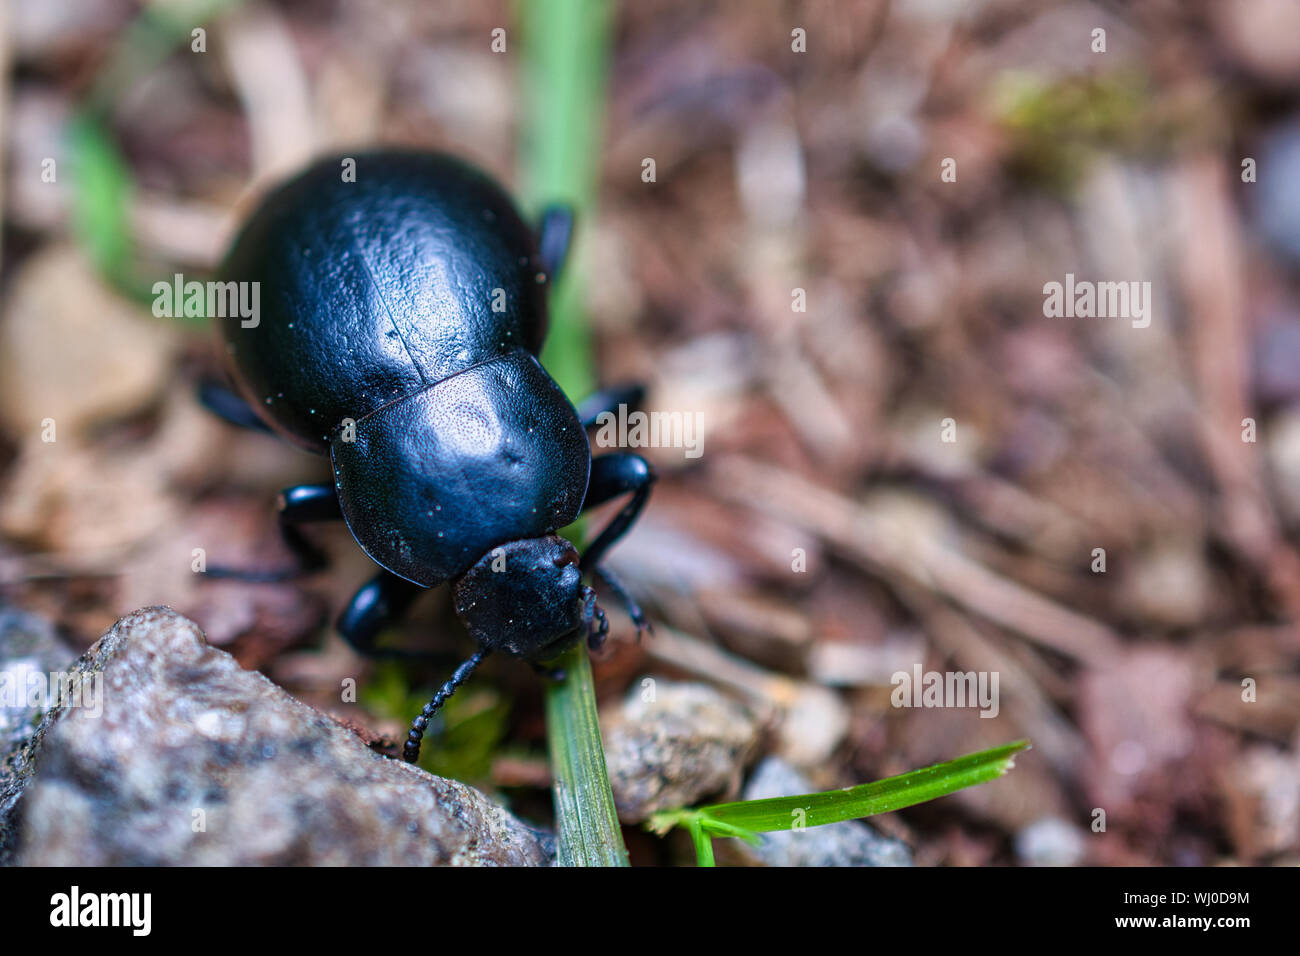 Coleottero possono mangiare un'erba close-up foto di bug Foto Stock